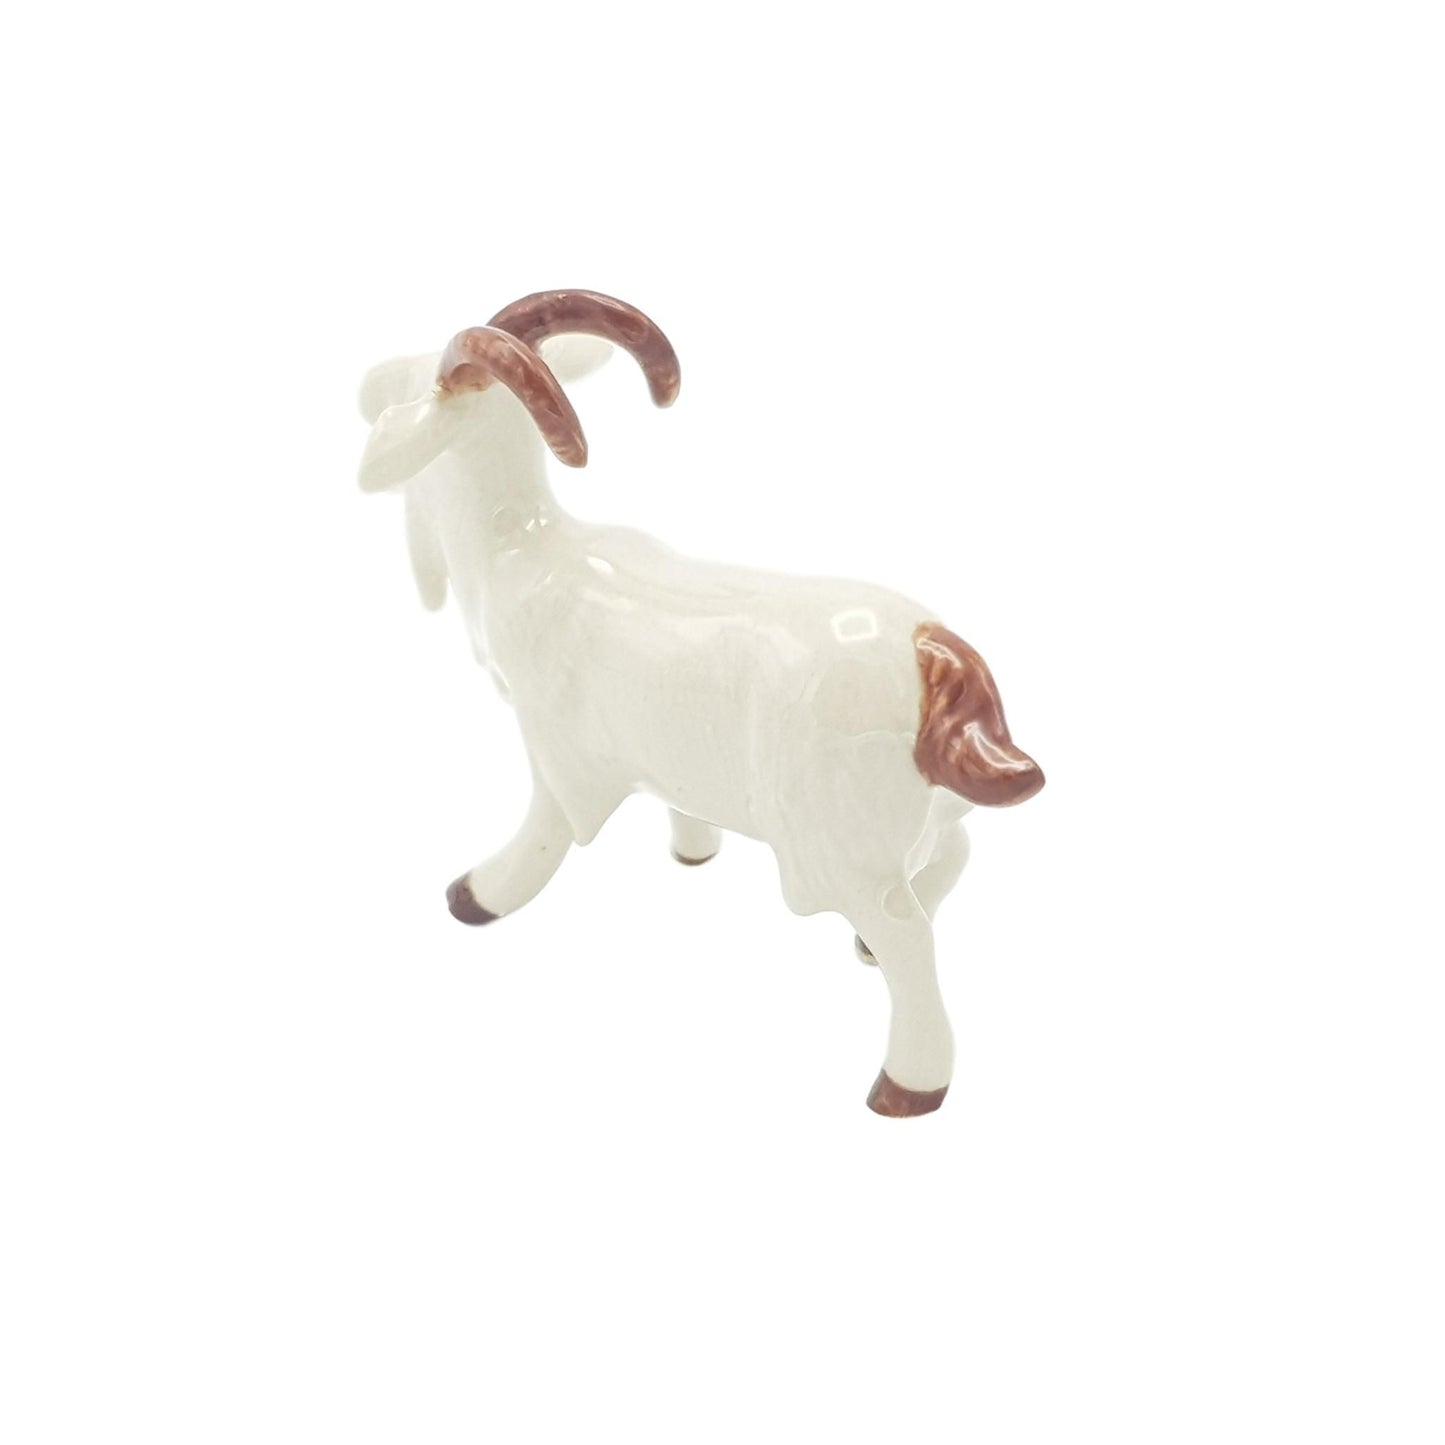 Goat White